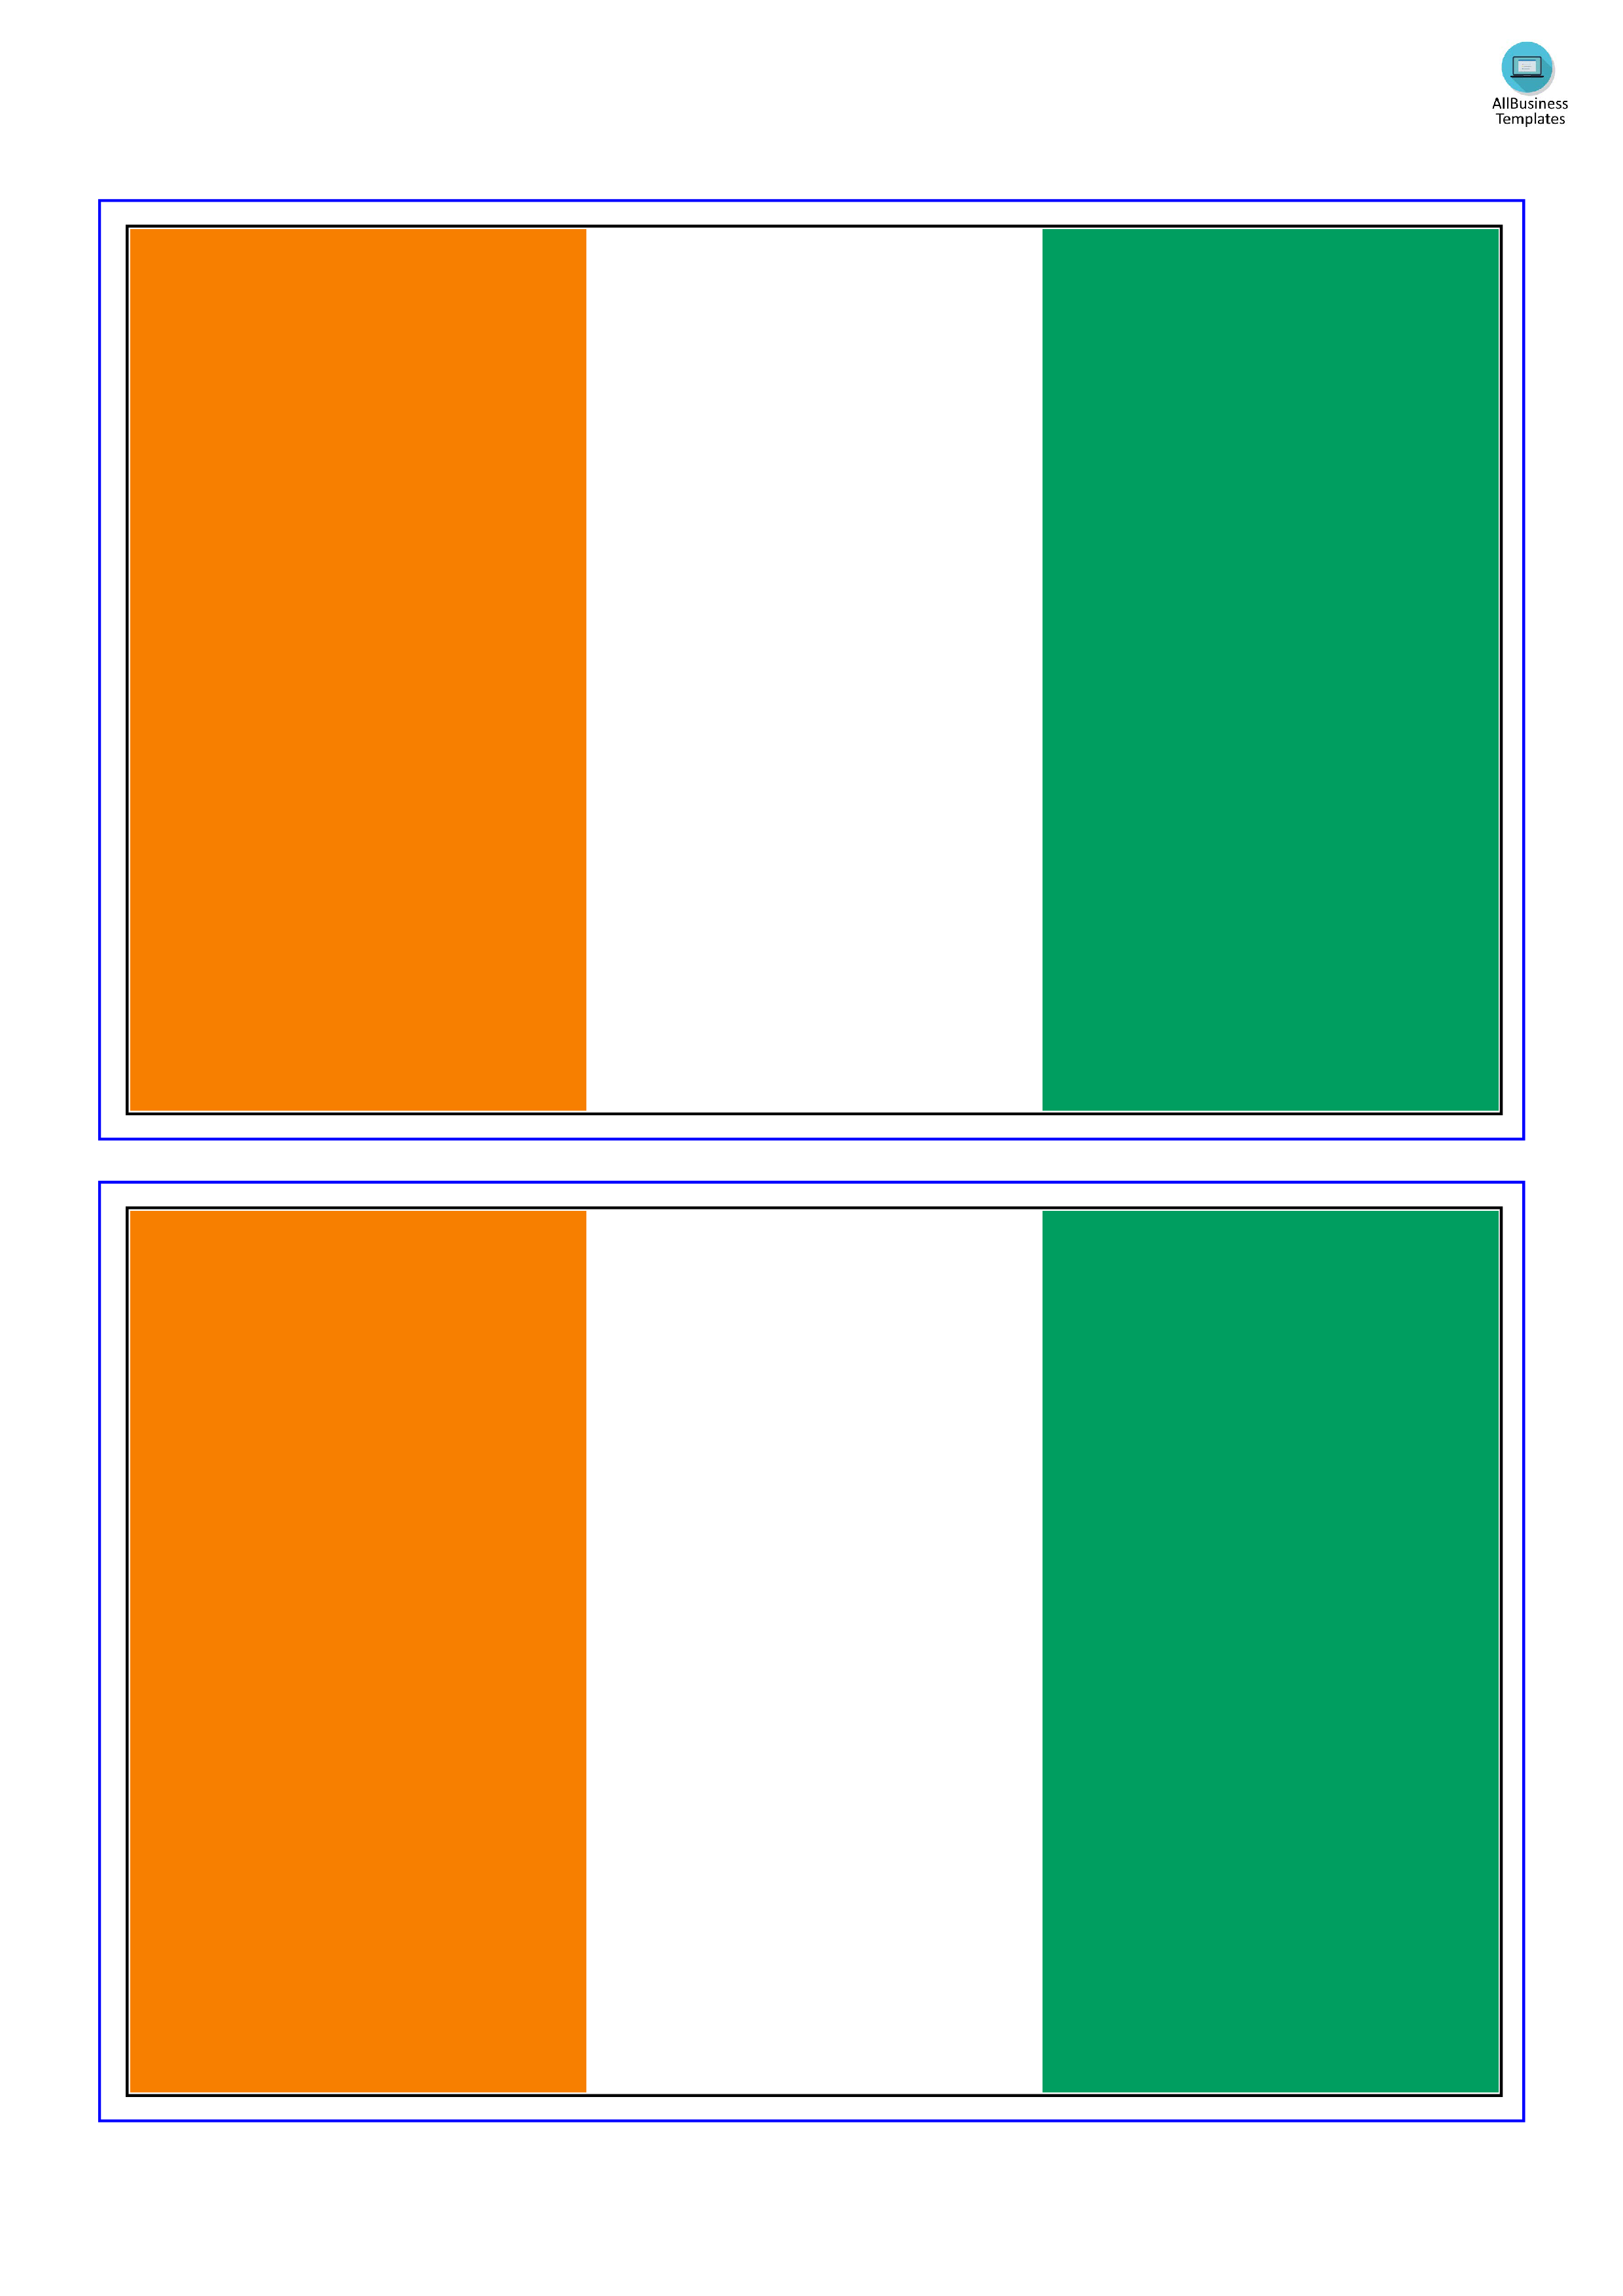 Cote D'Ivoire Flag main image